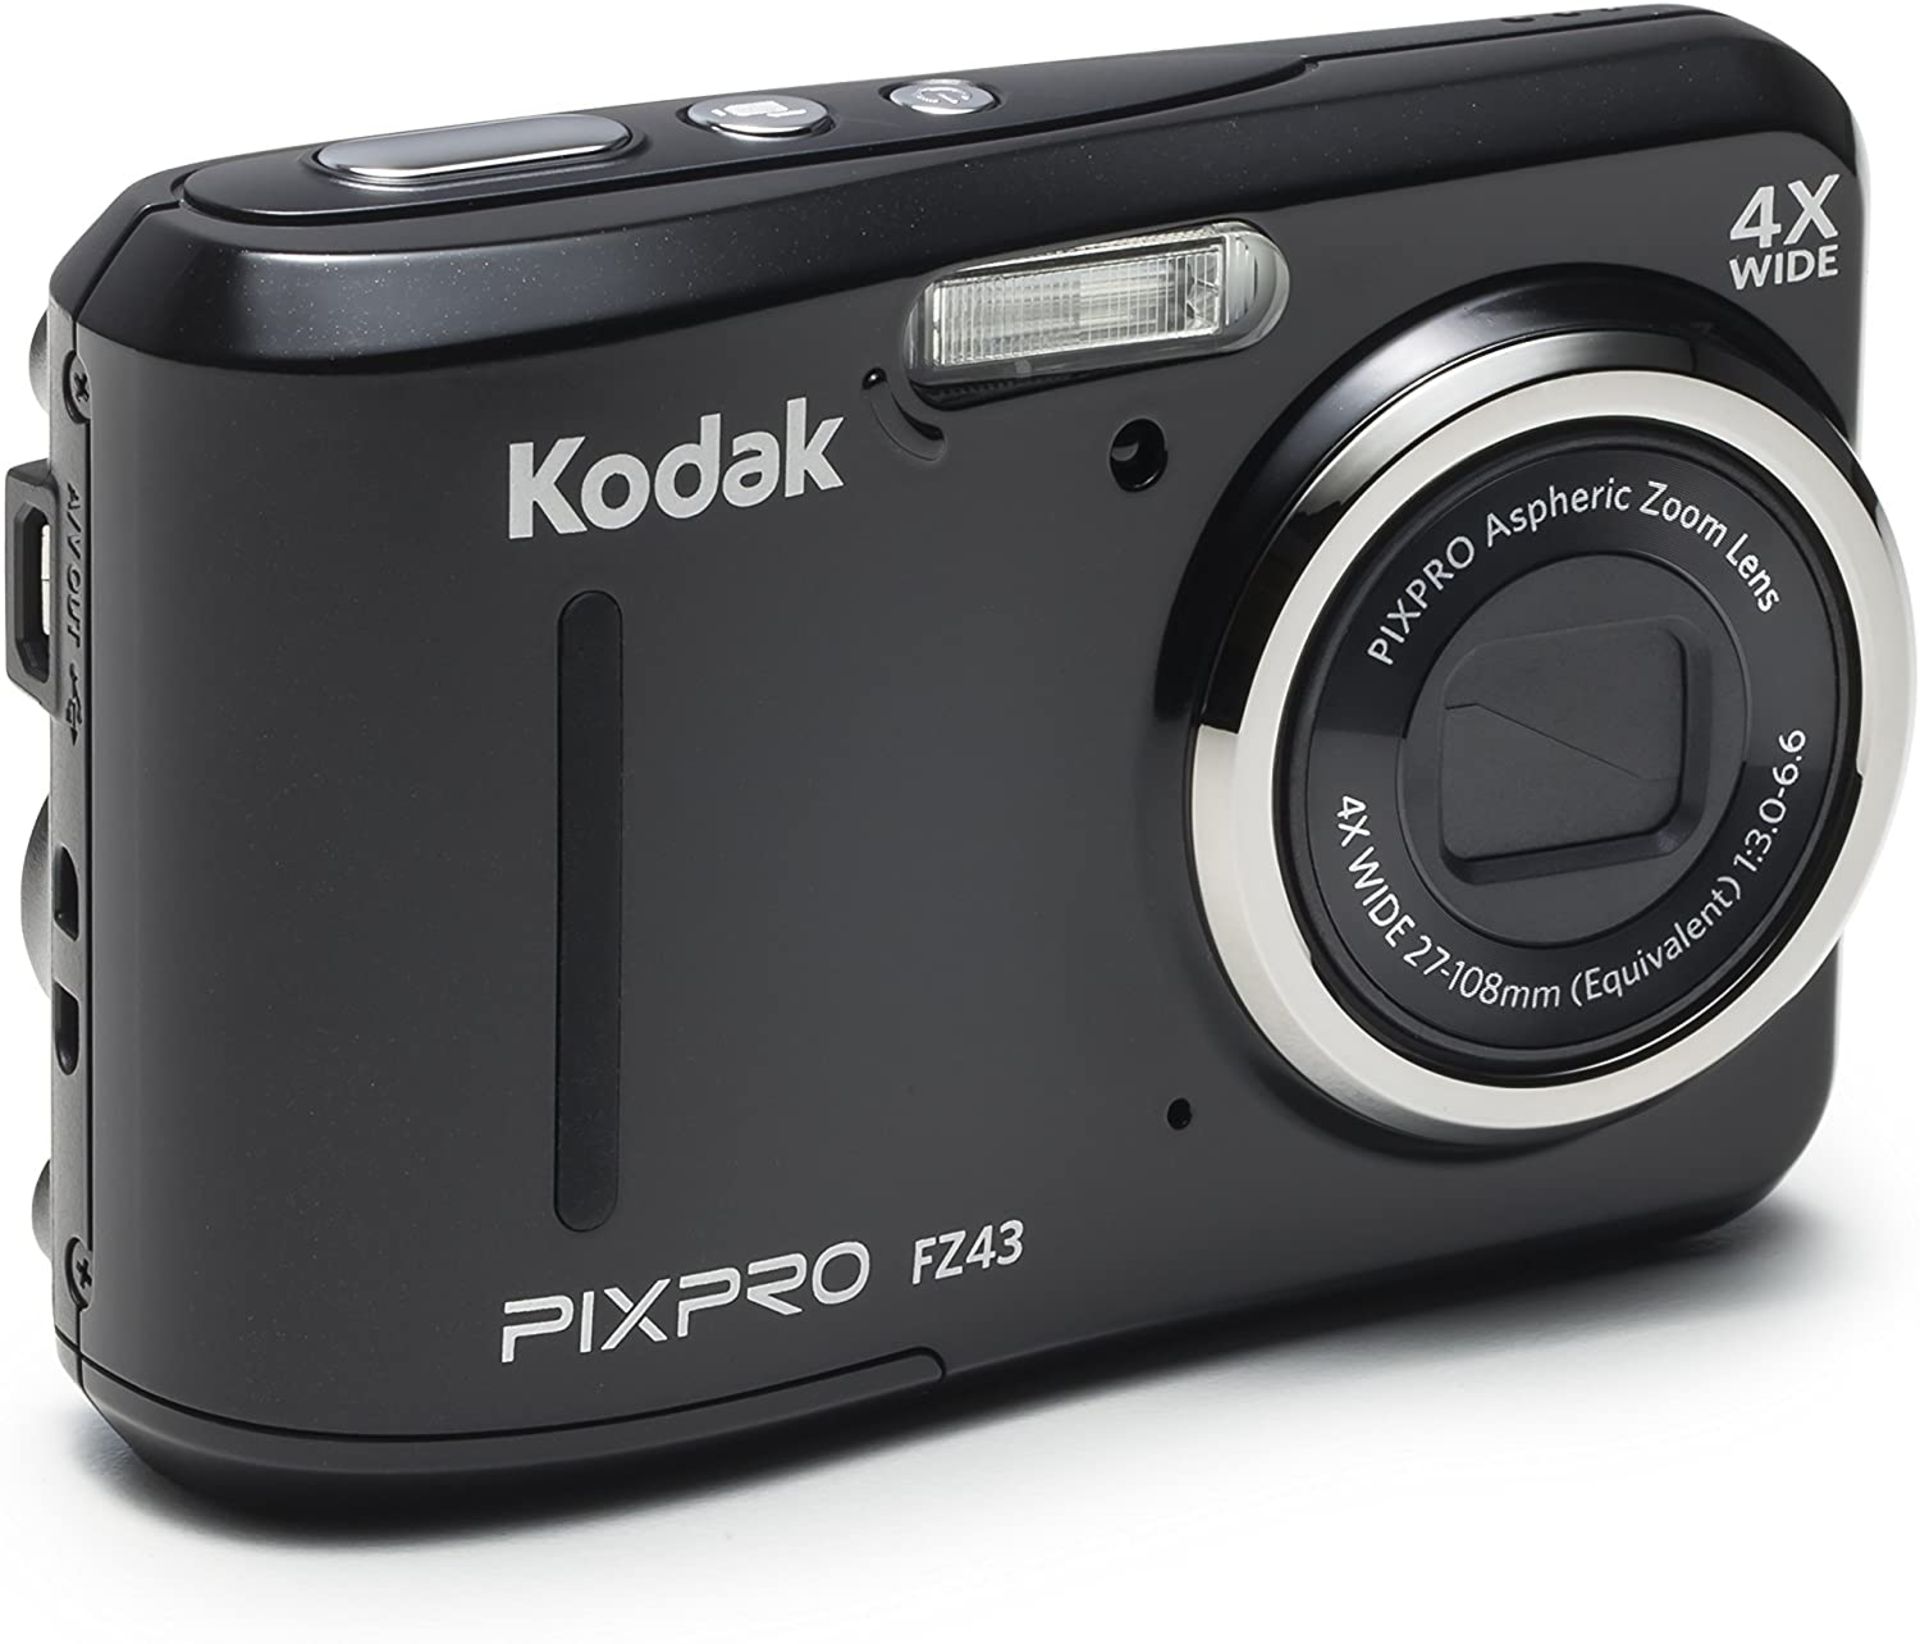 (41) 1 x Grade B - KODAK FZ43 Digital Still Camera - Black (27 mm Lens, 4x Zoom, 16 MP) 2.7-Inc... - Image 4 of 4